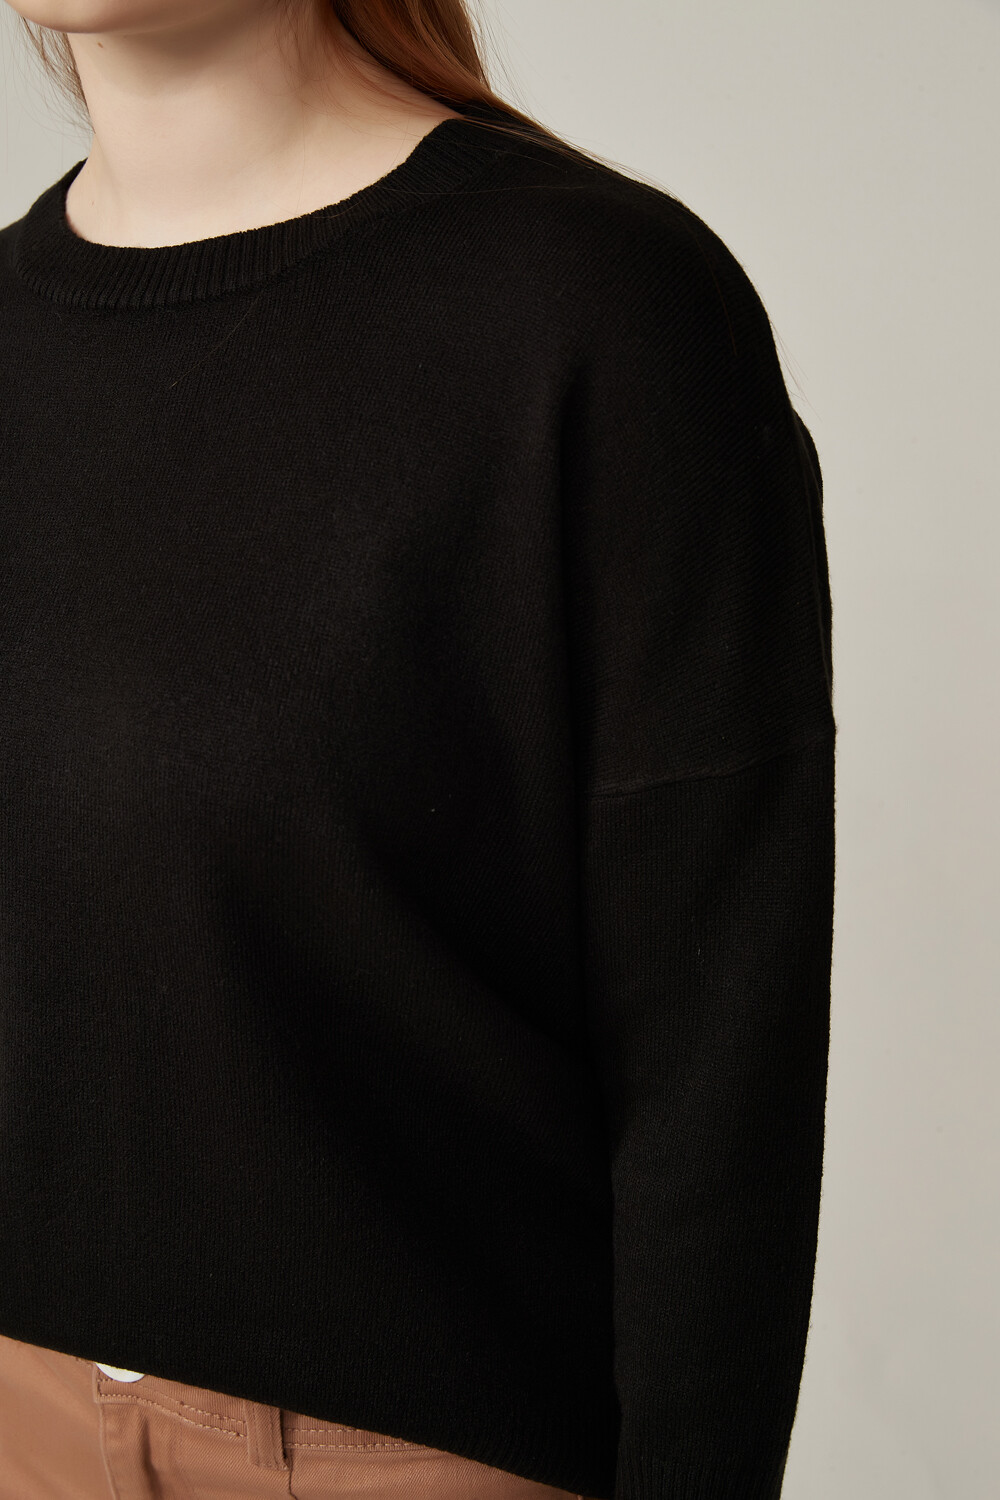 Sweater Alpino Negro